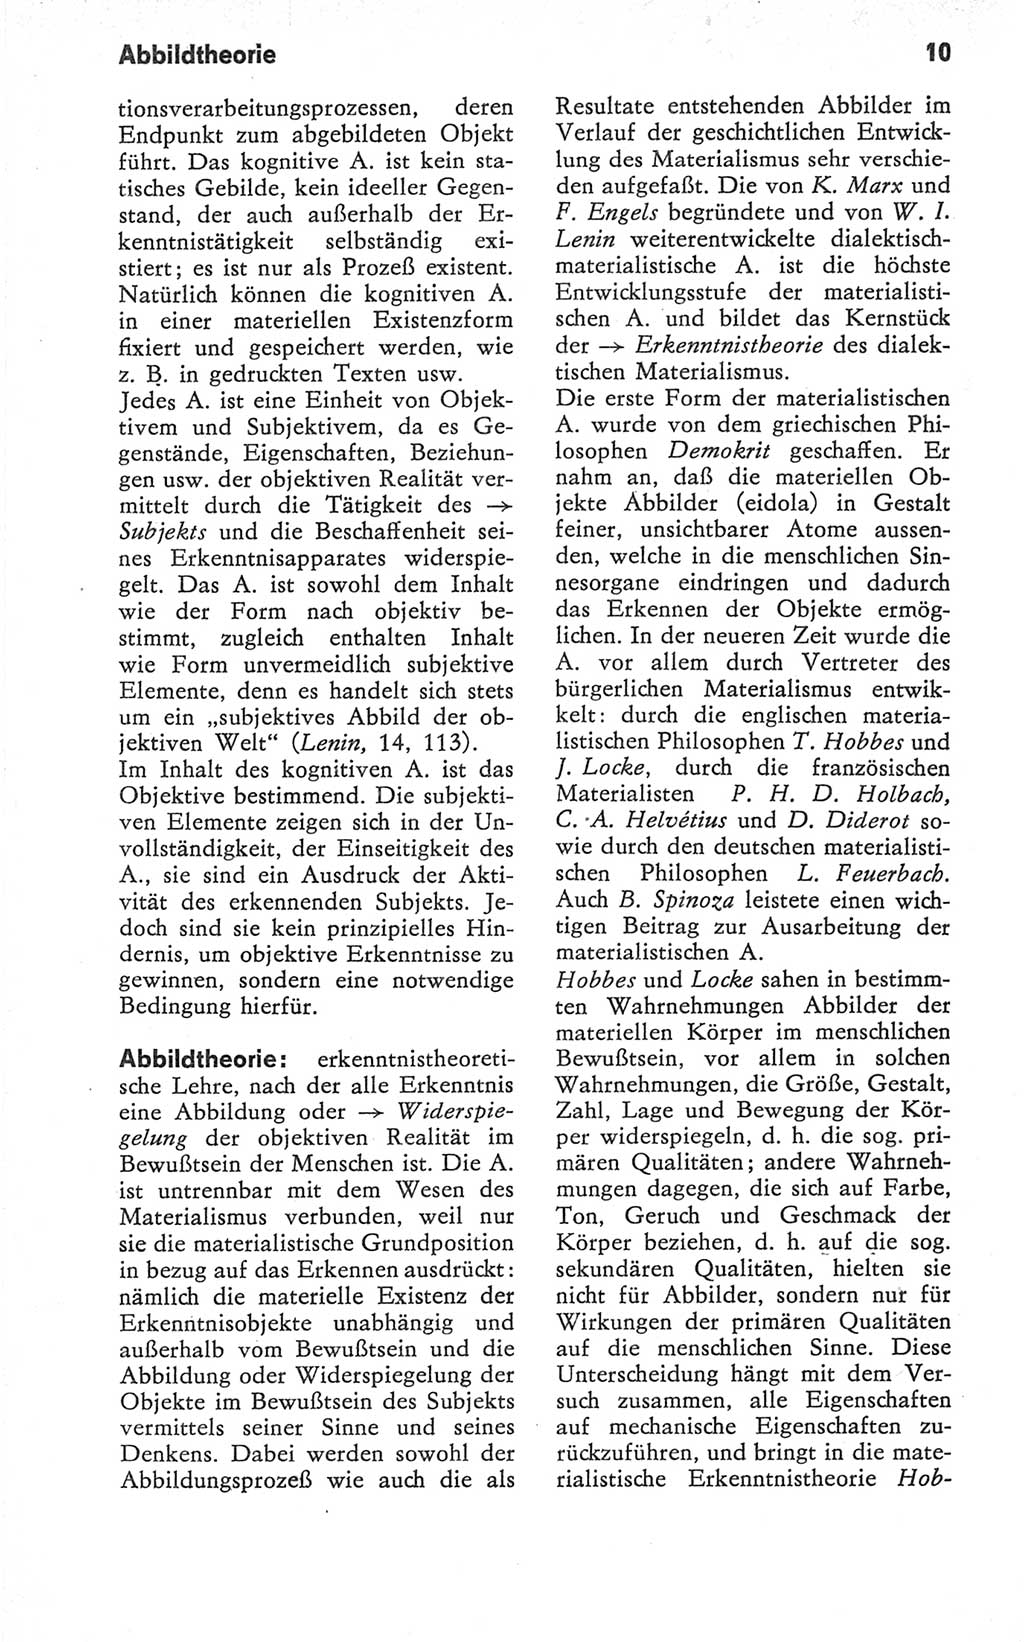 Kleines Wörterbuch der marxistisch-leninistischen Philosophie [Deutsche Demokratische Republik (DDR)] 1979, Seite 10 (Kl. Wb. ML Phil. DDR 1979, S. 10)